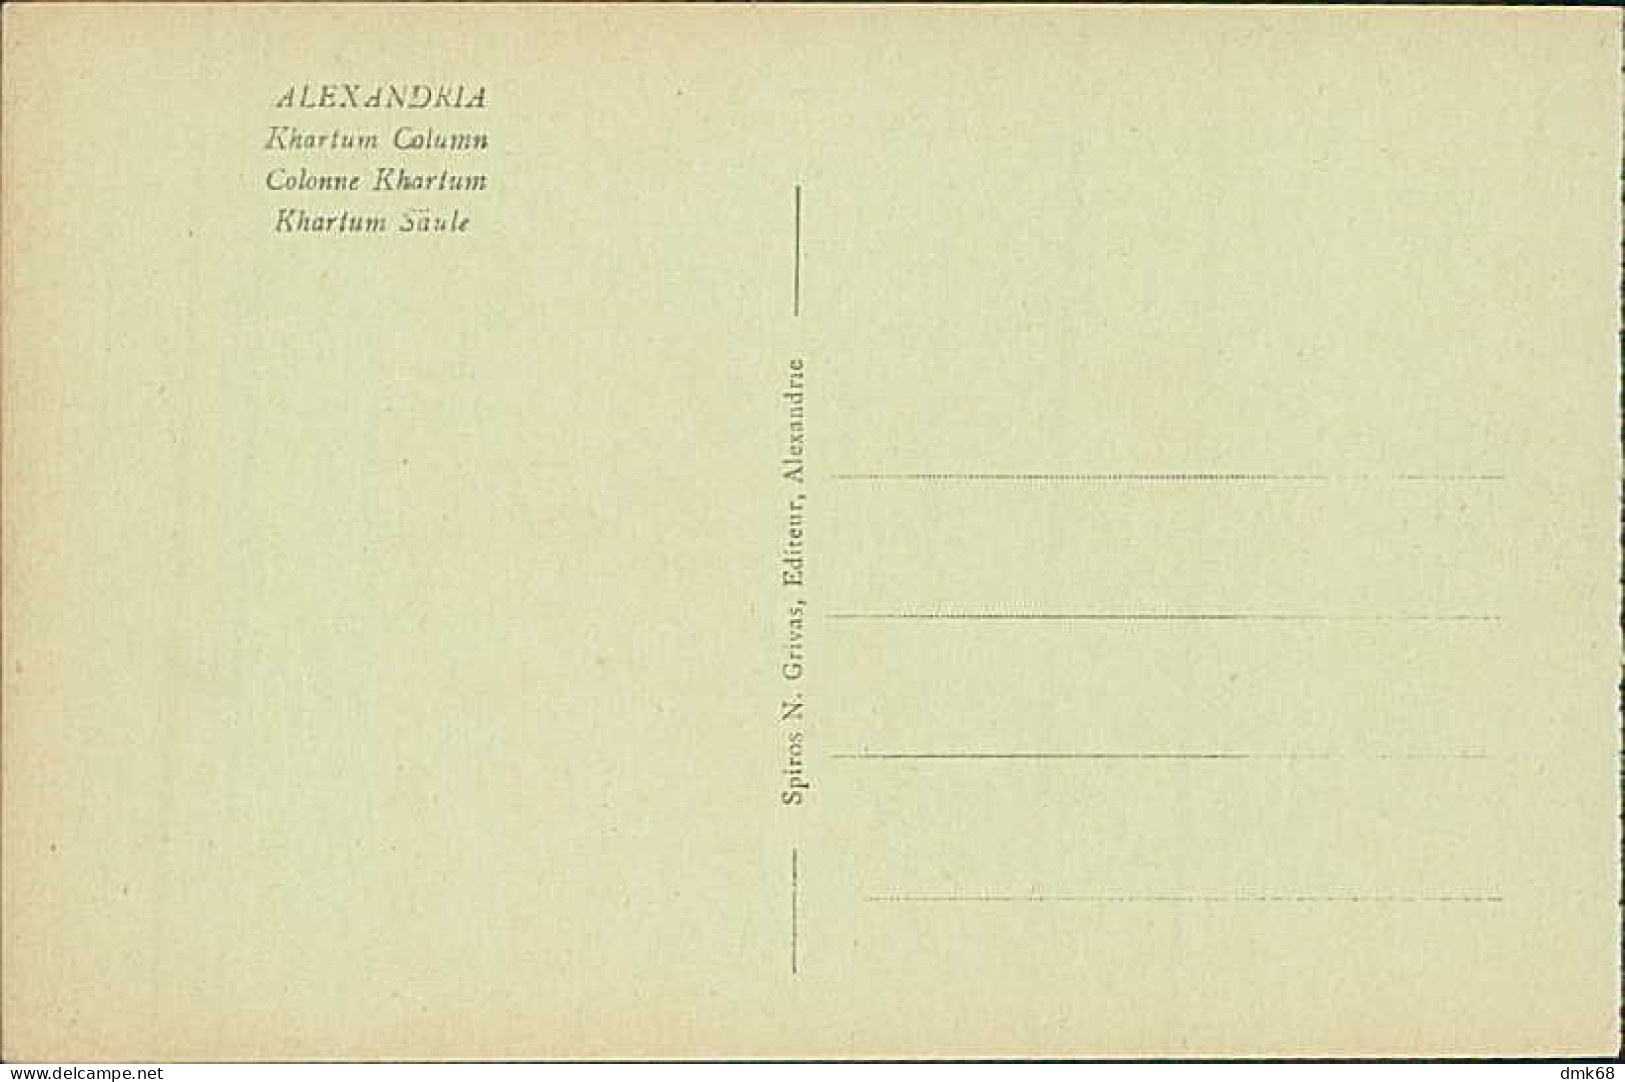 EGYPT - ALEXANDRIA / ALEXANDRIE - KHARTUM COLUMN - EDIT. N. GRIVAS - 1910s (12619) - Alexandrië